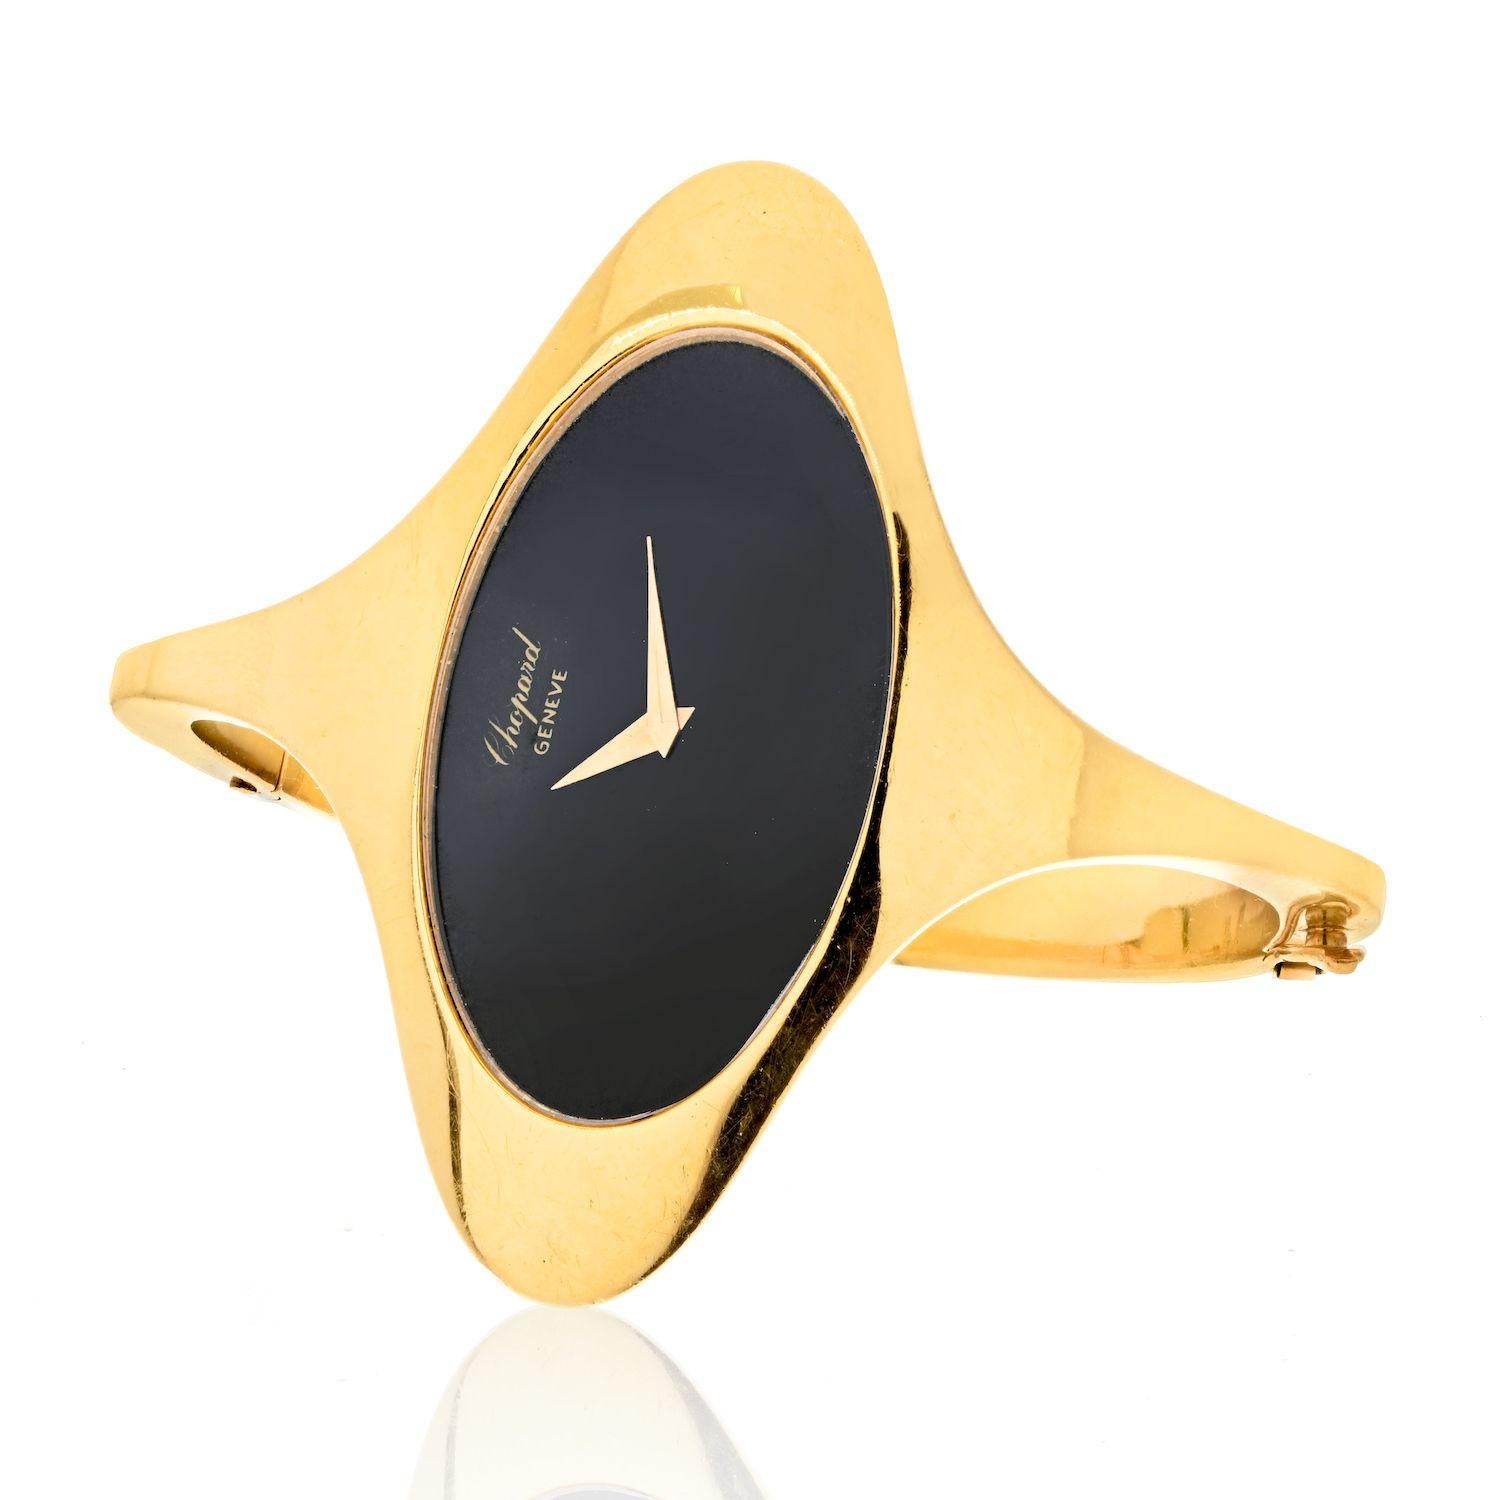 Cette montre-bracelet Chopard Ellipse ref. 5038 en or jaune 18 carats est une magnifique pièce d'artisanat. Elle présente un cadran noir avec un design de forme unique, à la fois élégant et luxueux. Le boîtier est en or jaune 18 carats et mesure 53